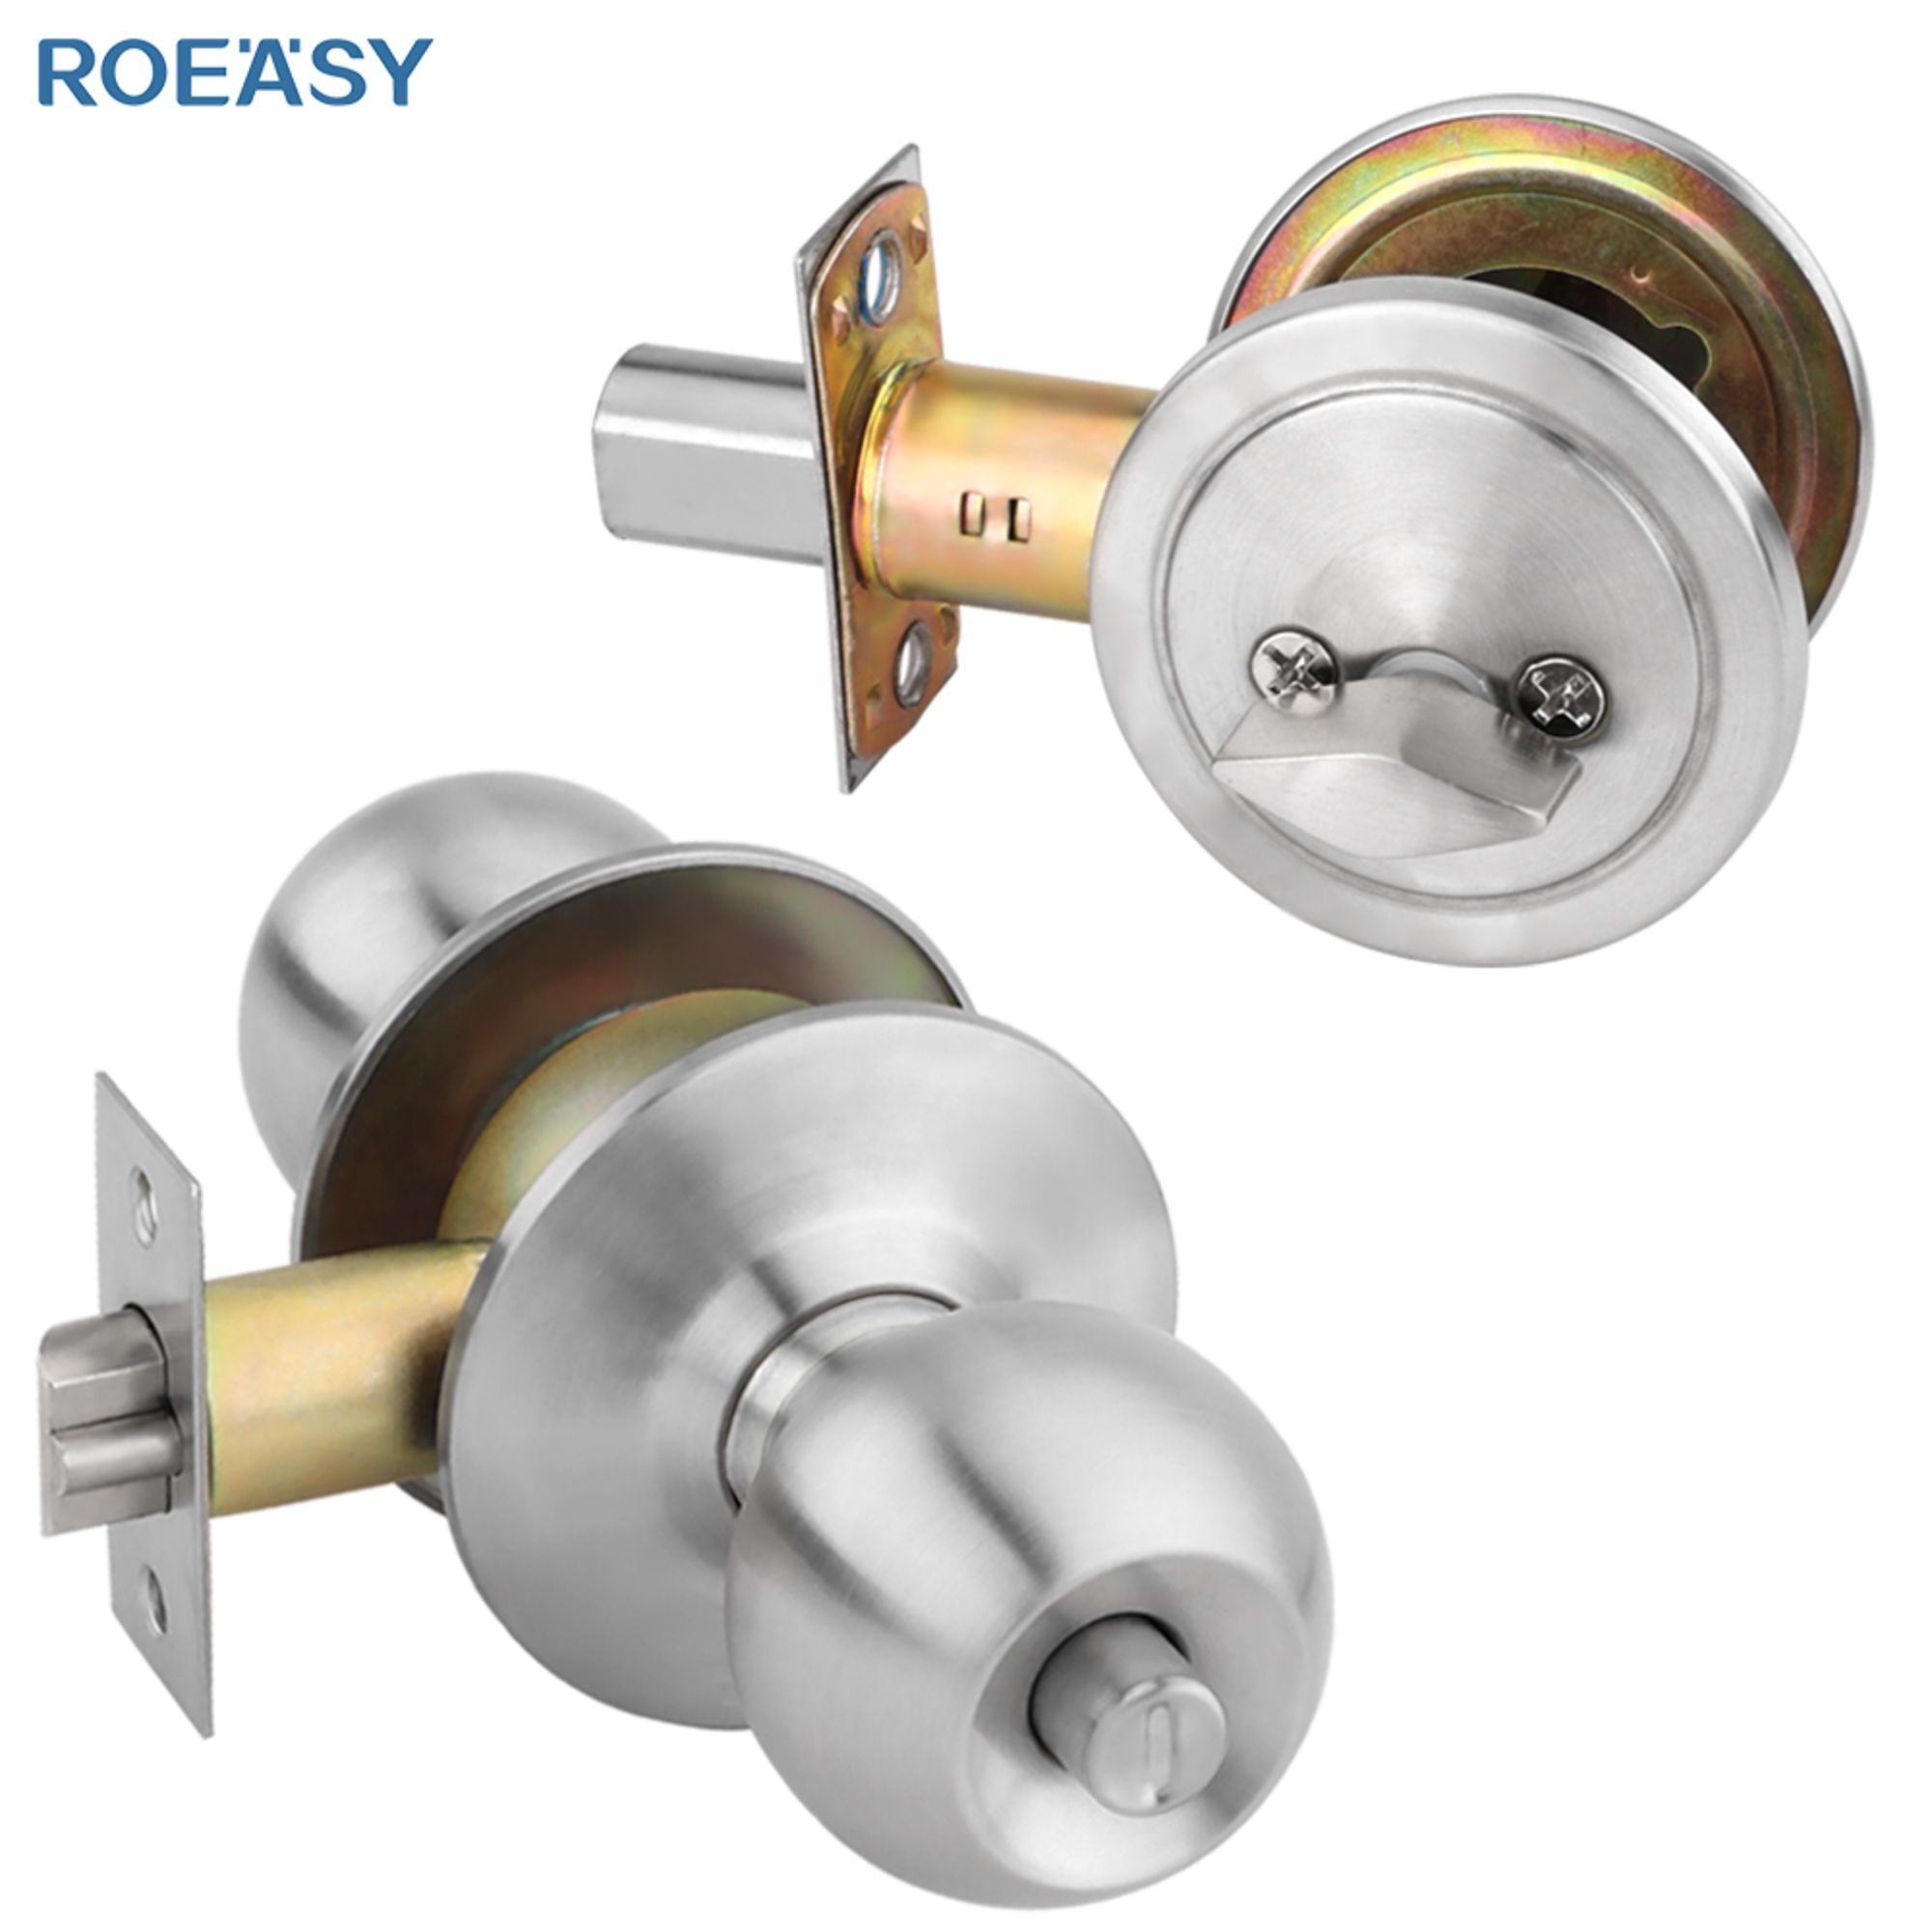 Roeasy 587SS + DB101SS deadbolt lock cylinder sash latch and deadbolt deadbolt uk standard anti saw mortise door lock